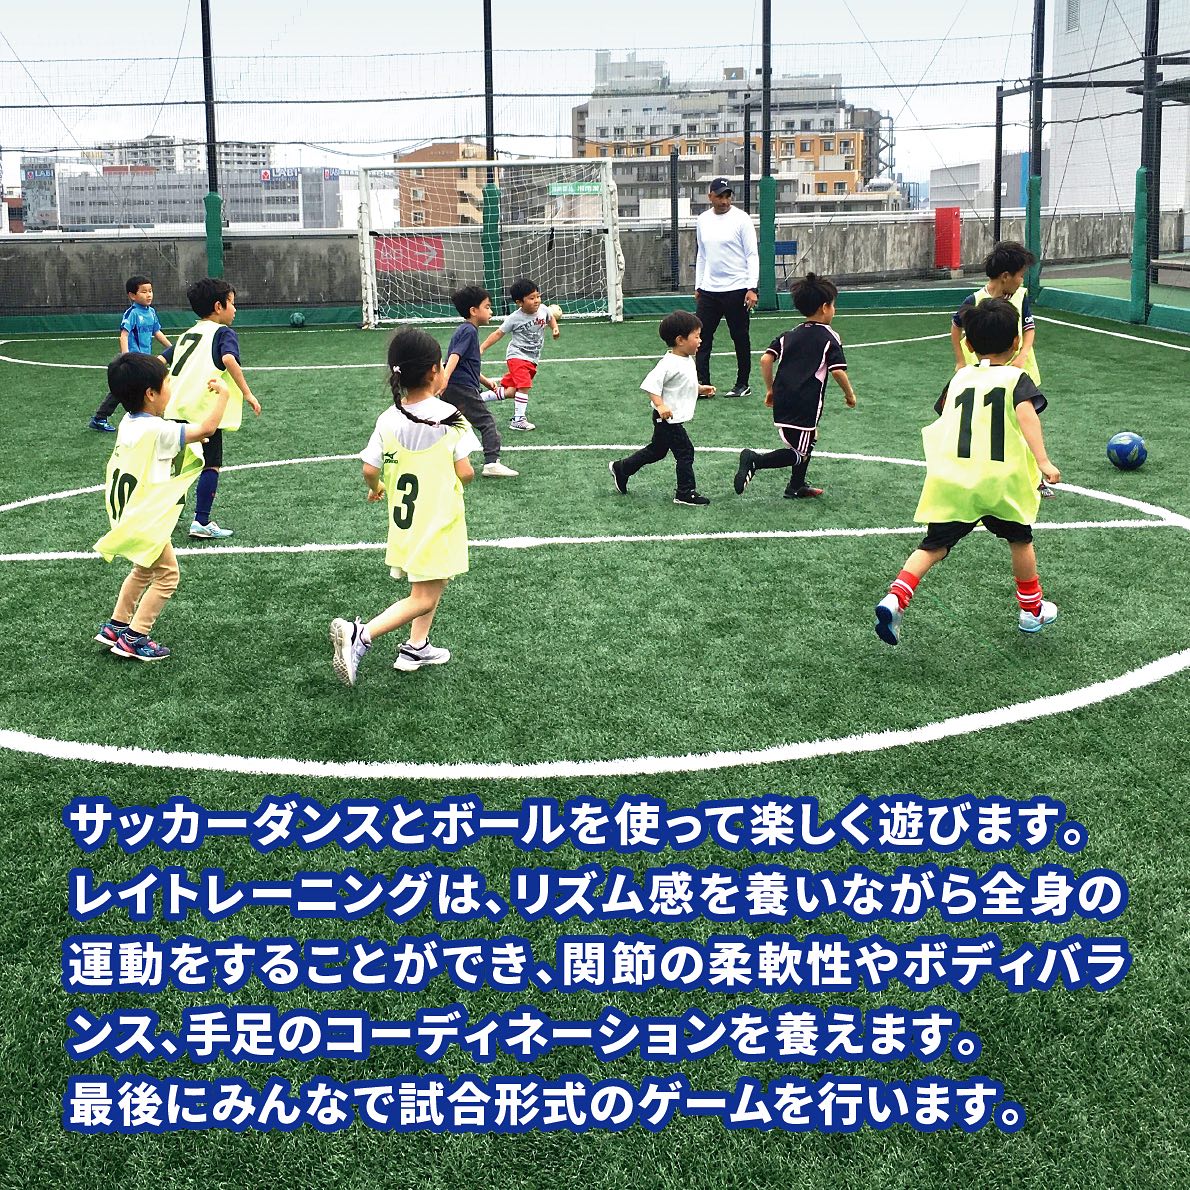 【茅ヶ崎・そよら屋上】親子サッカー教室